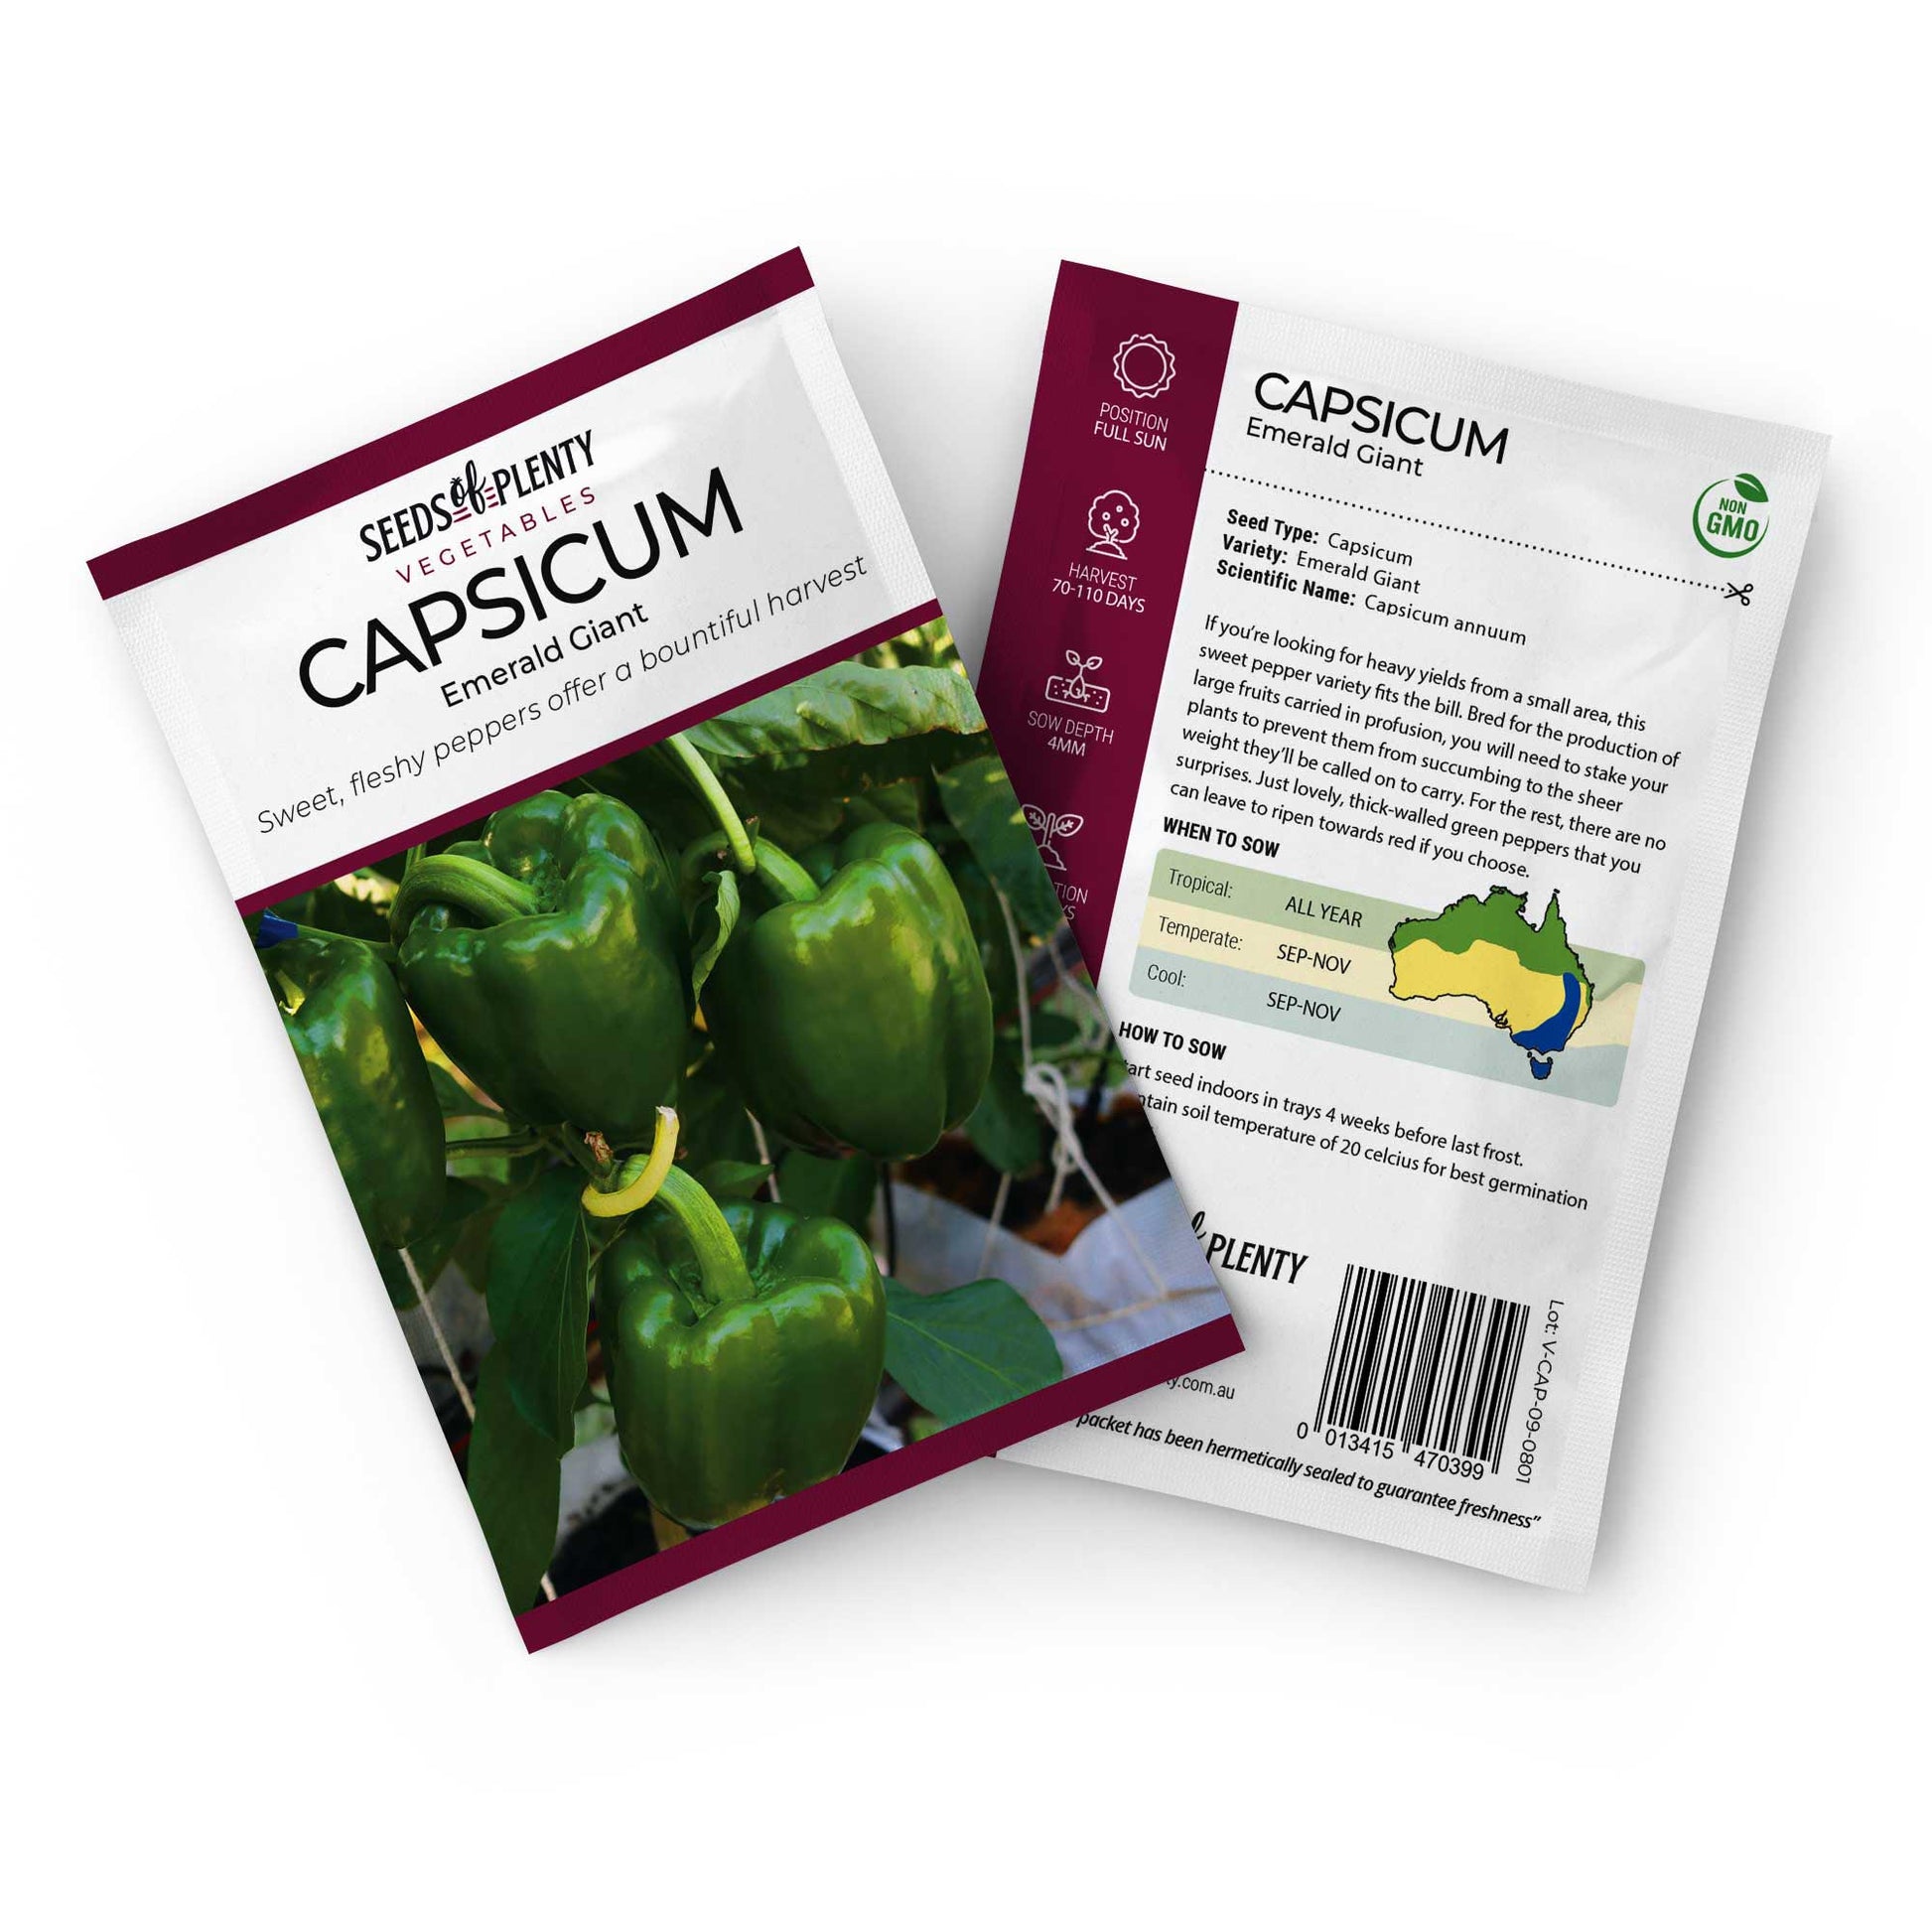 CAPSICUM - Emerald Giant Default Title